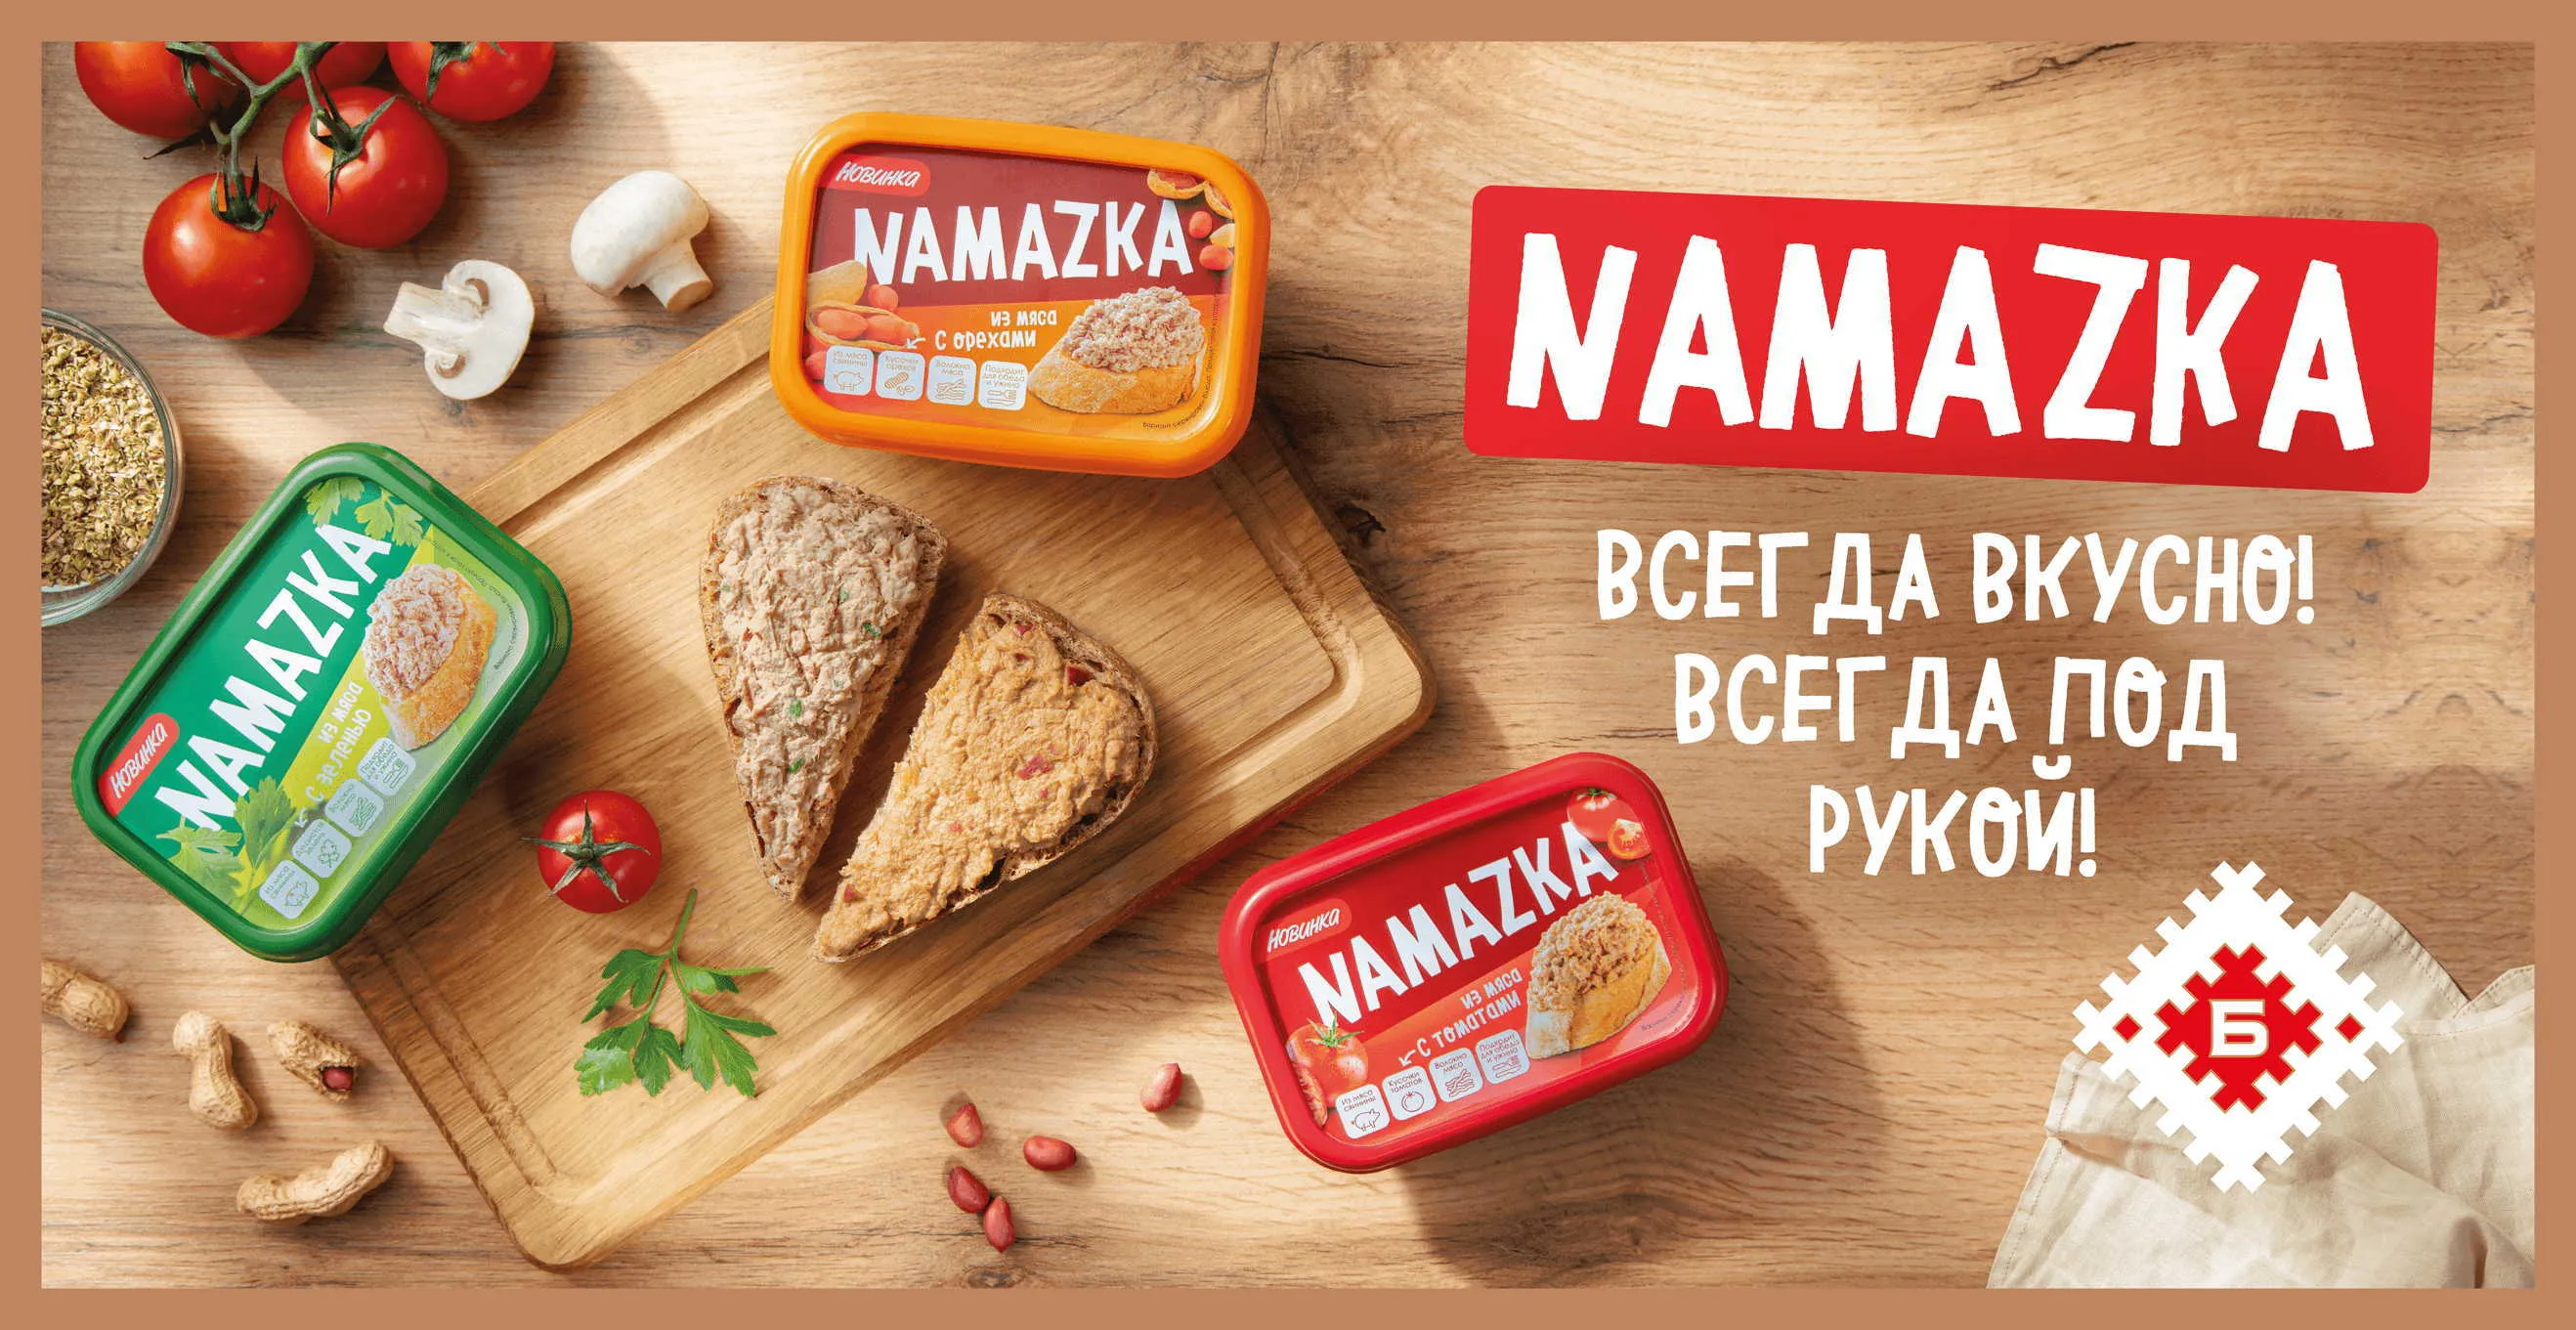 NAMAZKA – a new unique product!